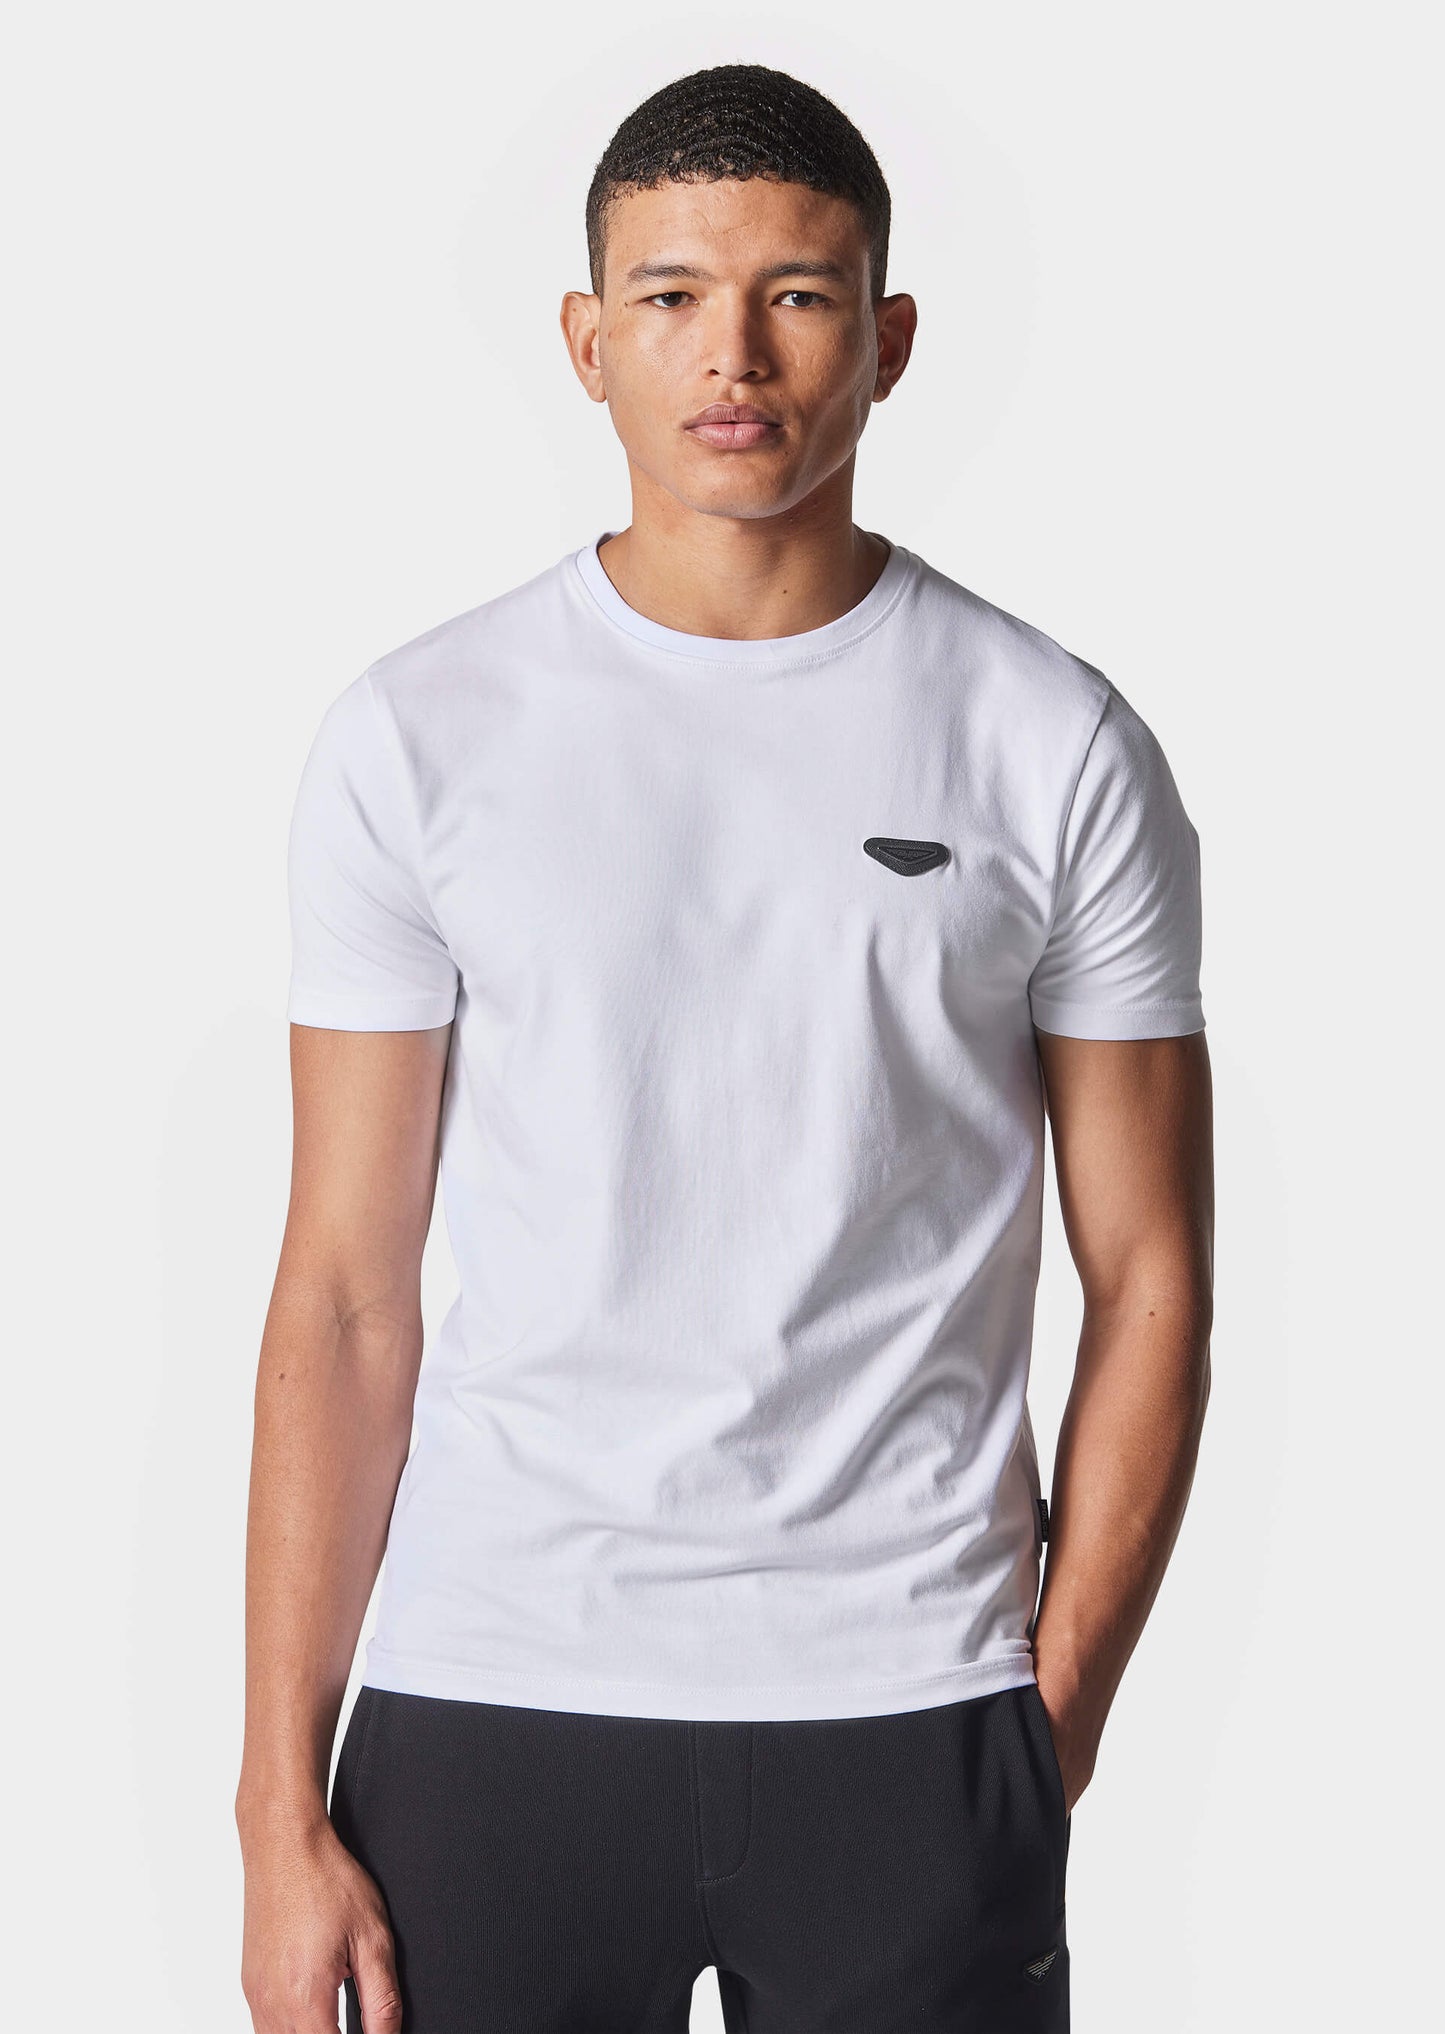 Kosis White T-Shirt